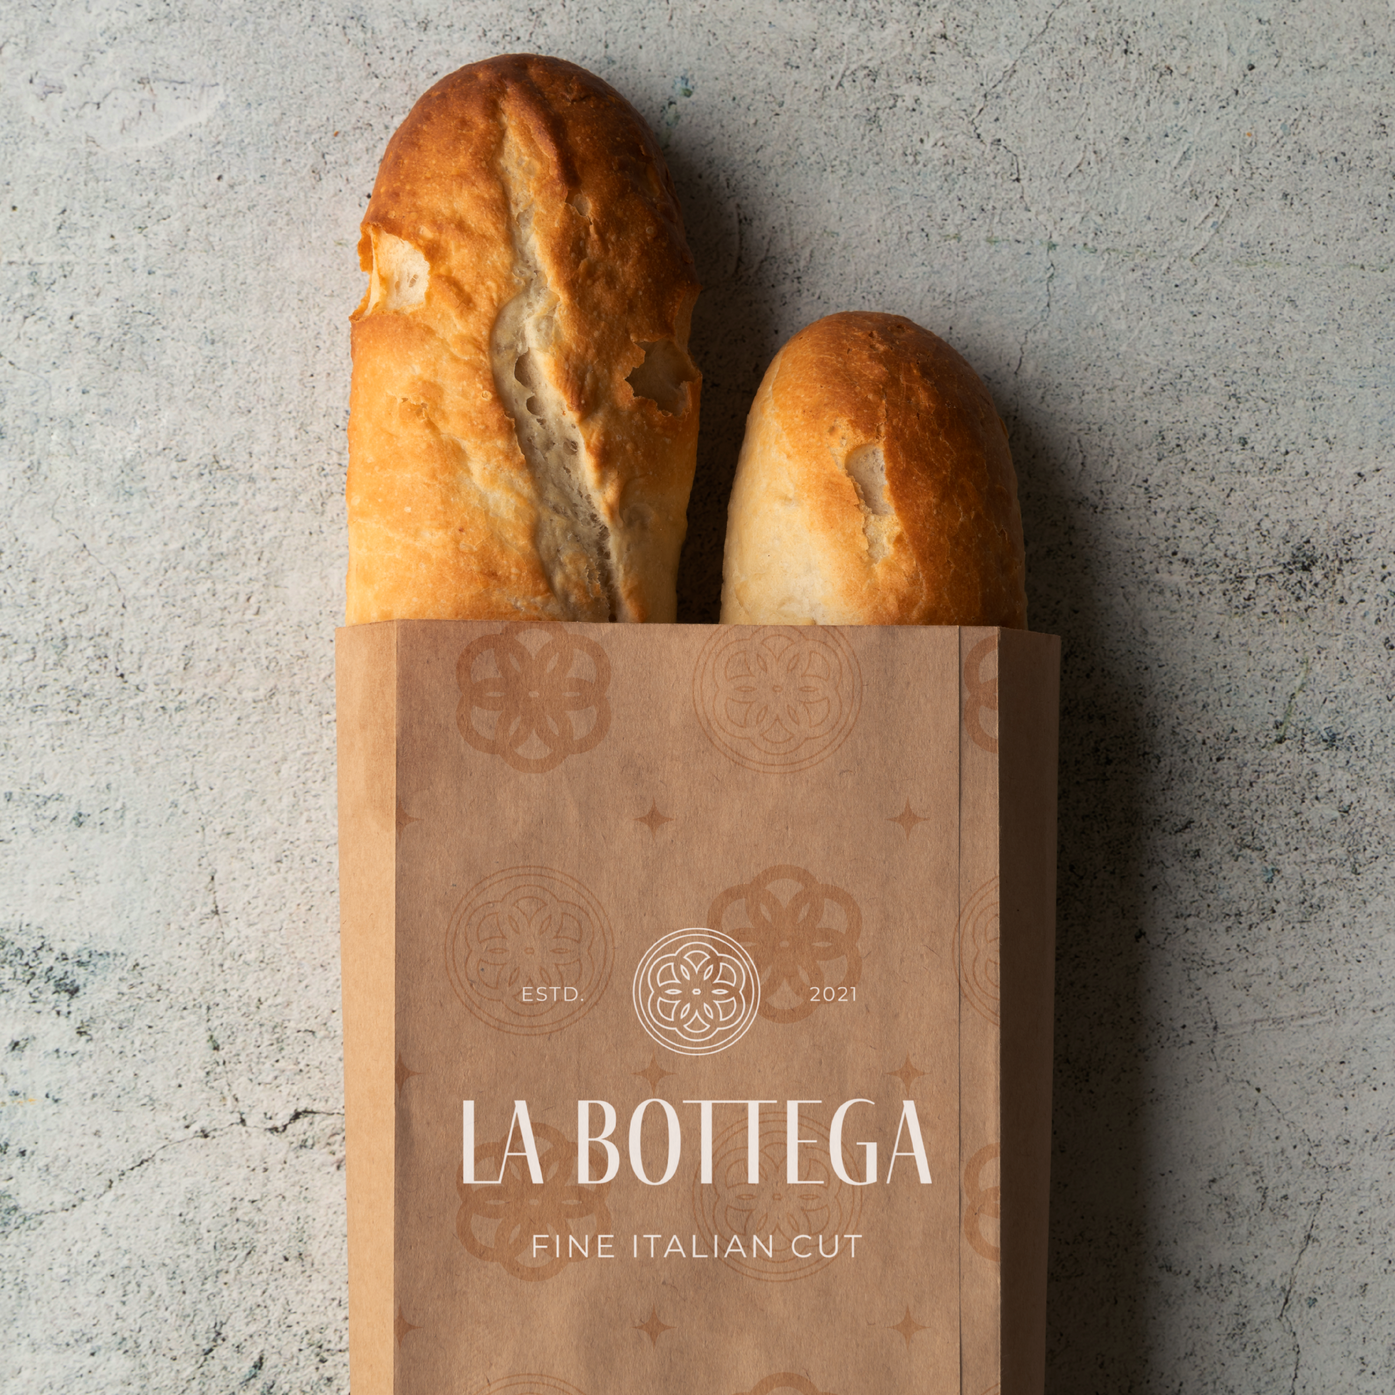 Image of bread inside la bottega sleeve created by rapid agency in belfast